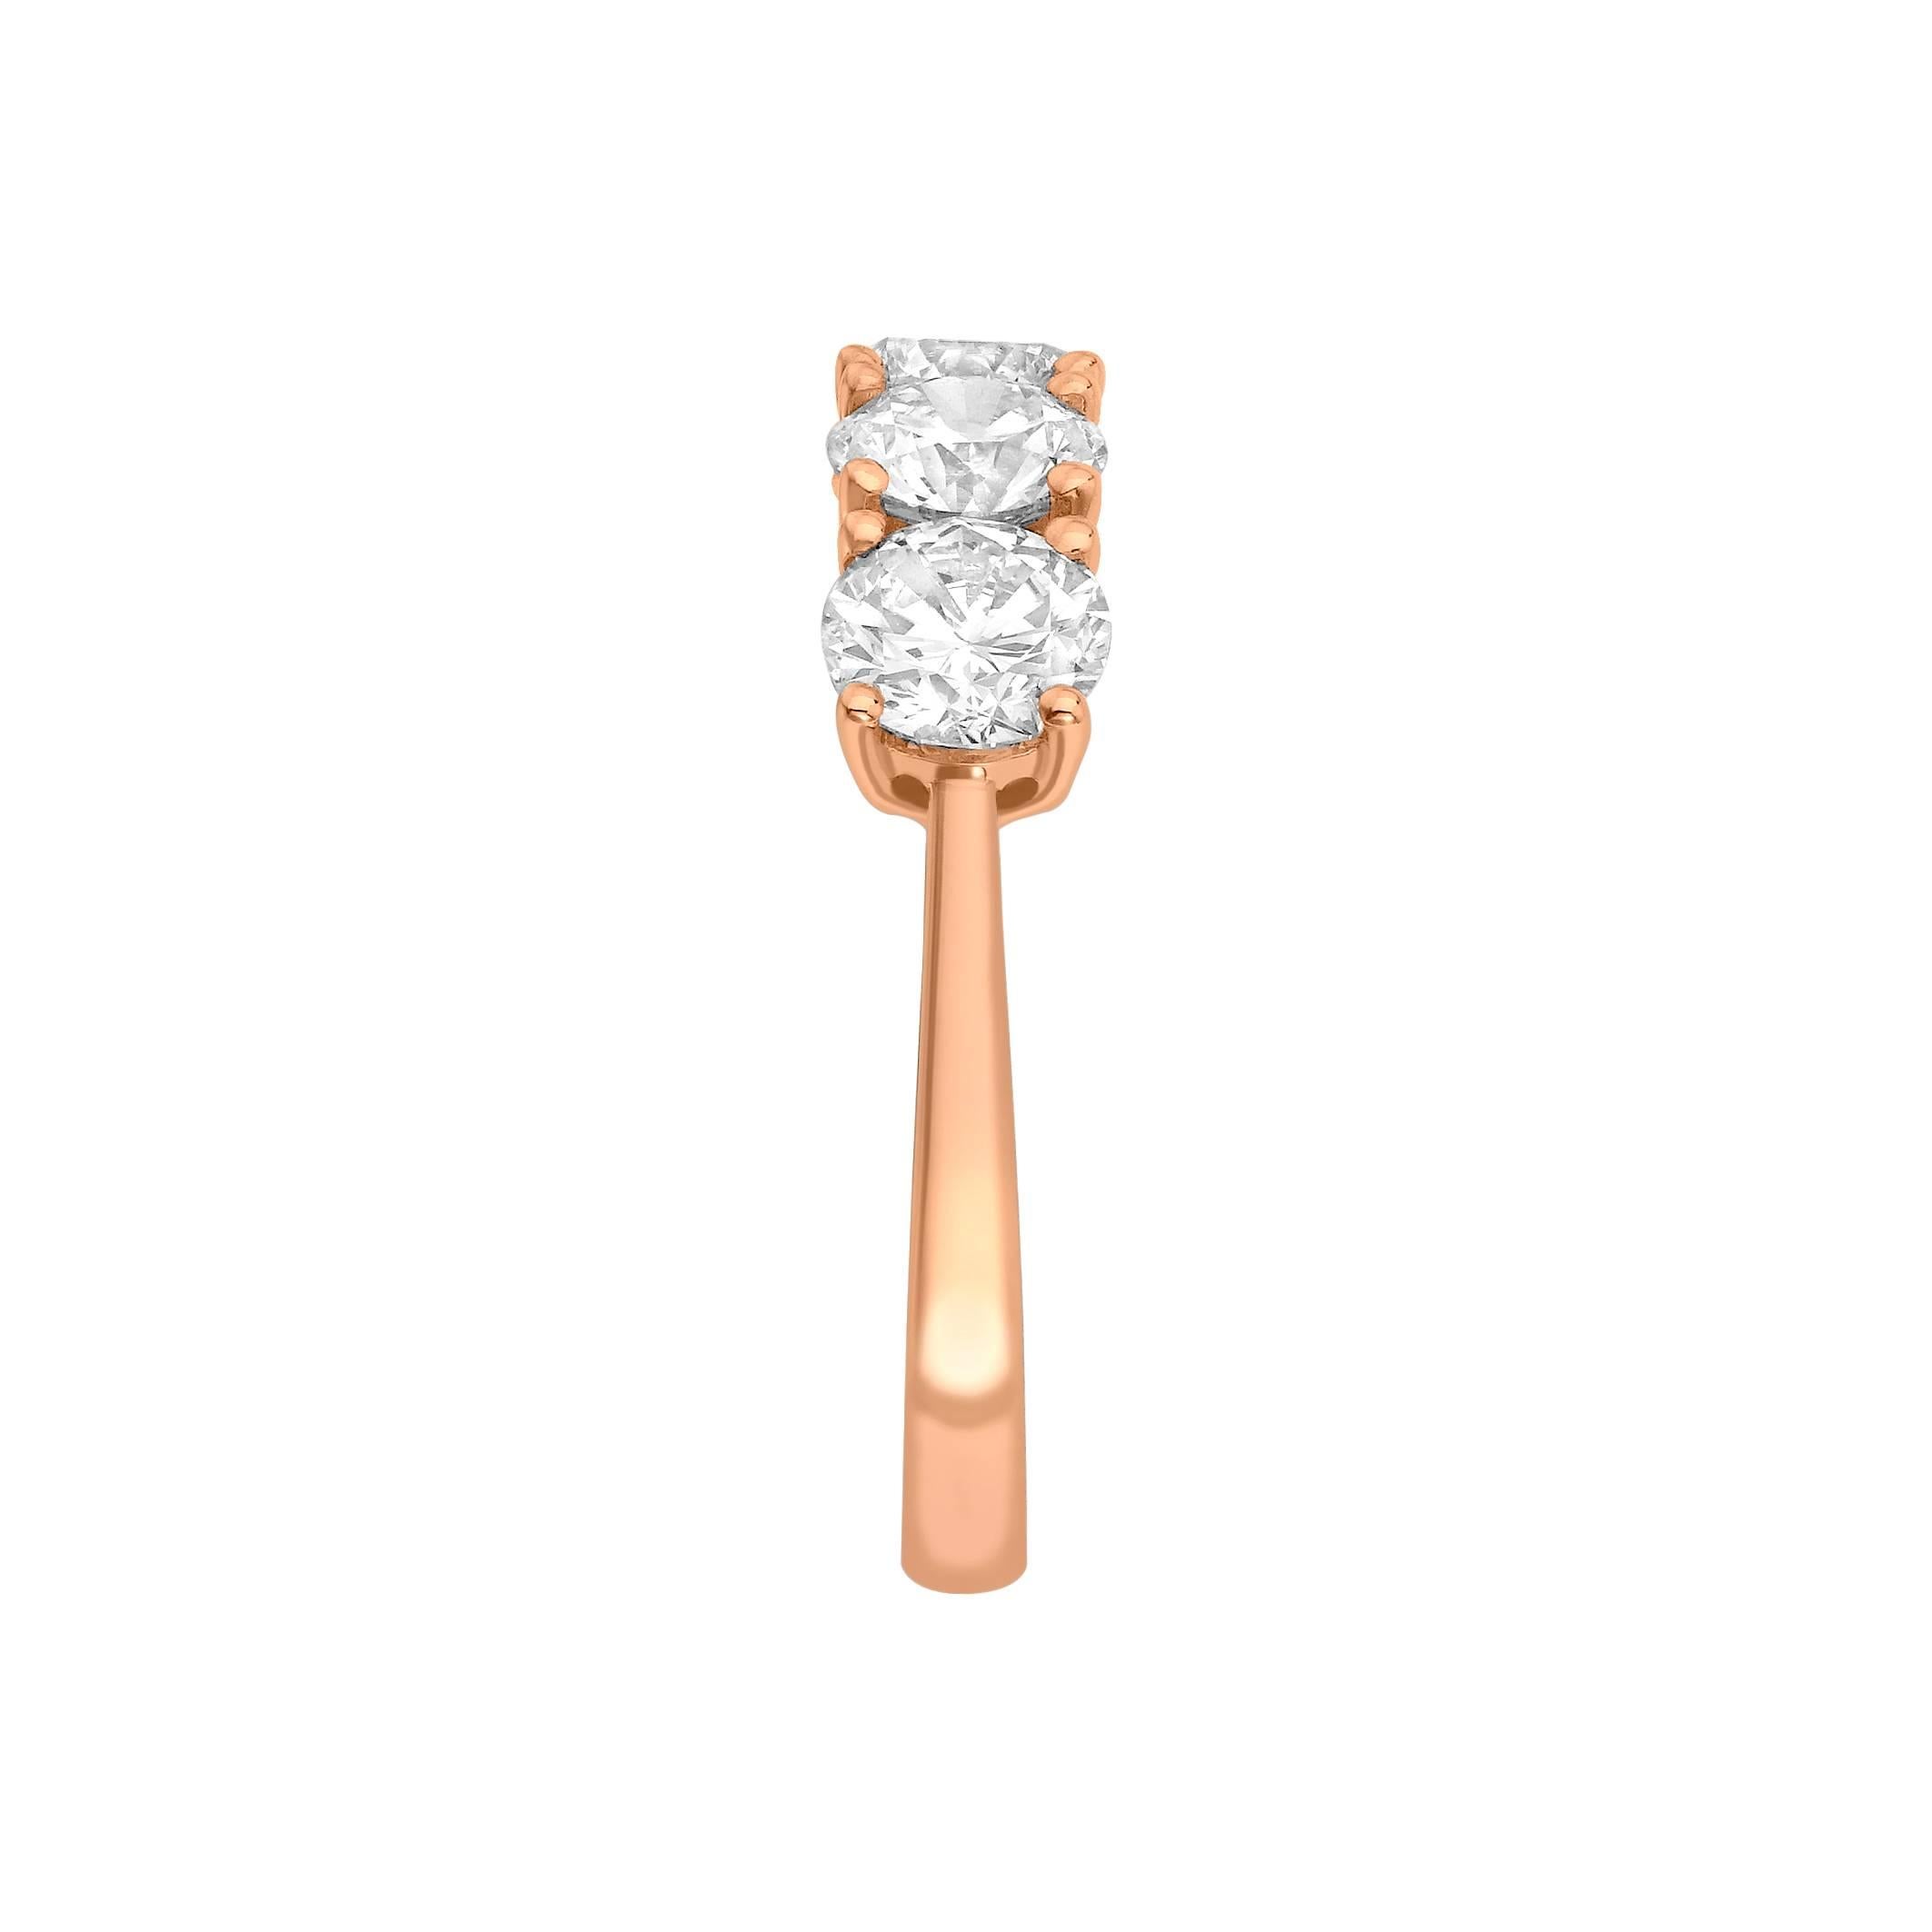 Dieser halbe Ewigkeitsring mit 5 runden Diamanten aus 18k Roségold ist eine exquisite Ergänzung unserer Kollektion. Eine funkelnde Reihe von fünf H-SI1-Diamanten im Rundschliff sorgt für einen klassischen und ikonischen Ring. Dieses Band hat ein